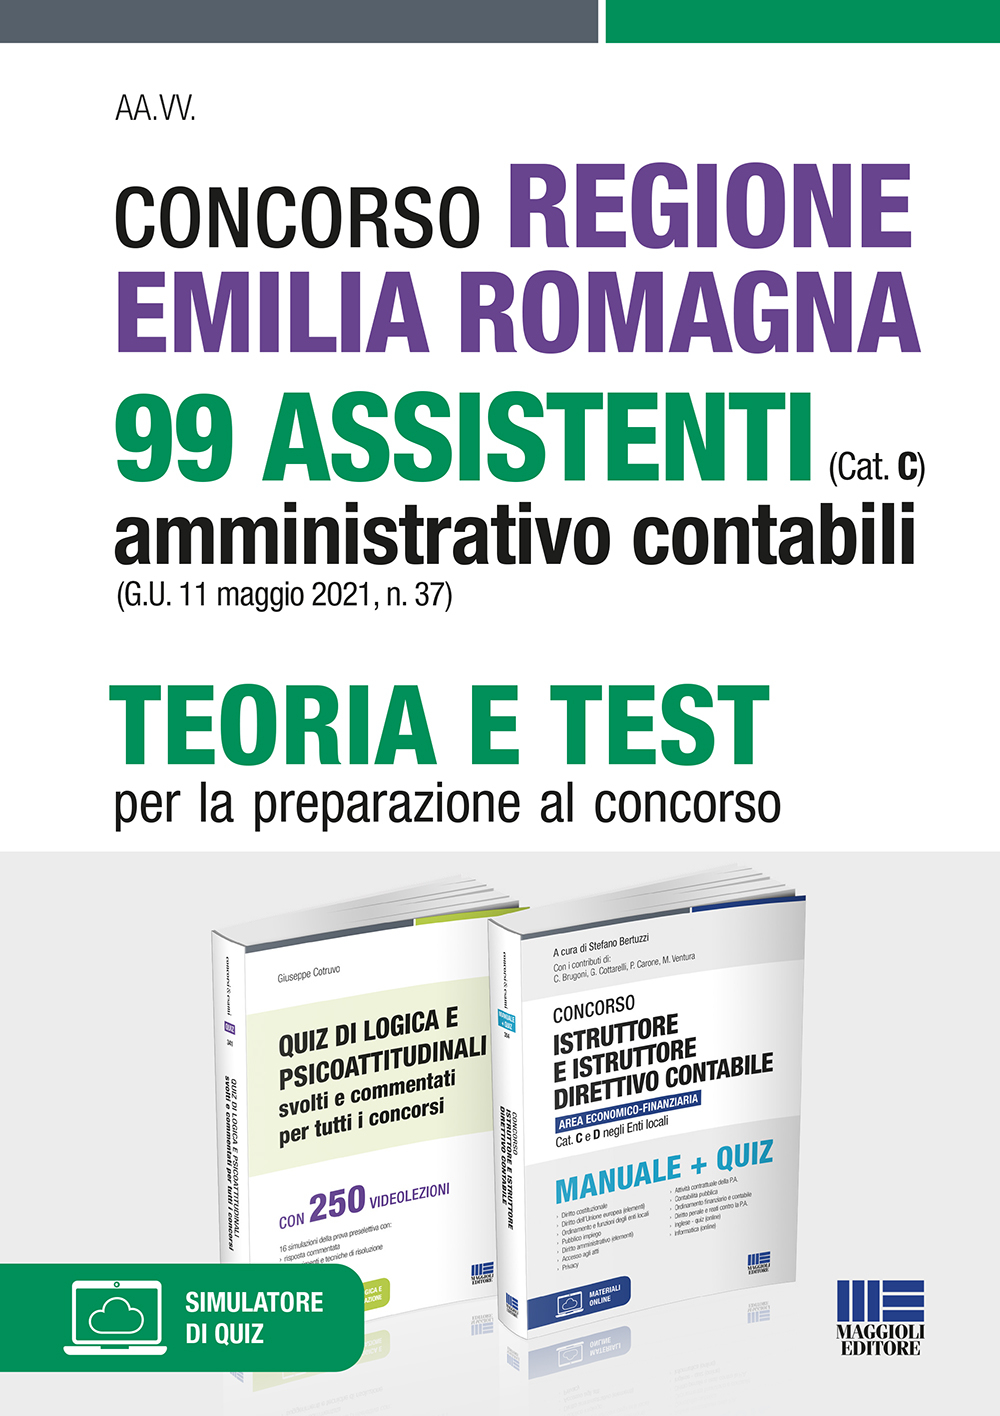 Concorso Regione Emilia Romagna 99 Assistenti amministrativo contabili (Cat. C) (G.U. 11 maggio 2021, n. 37) - Kit completo